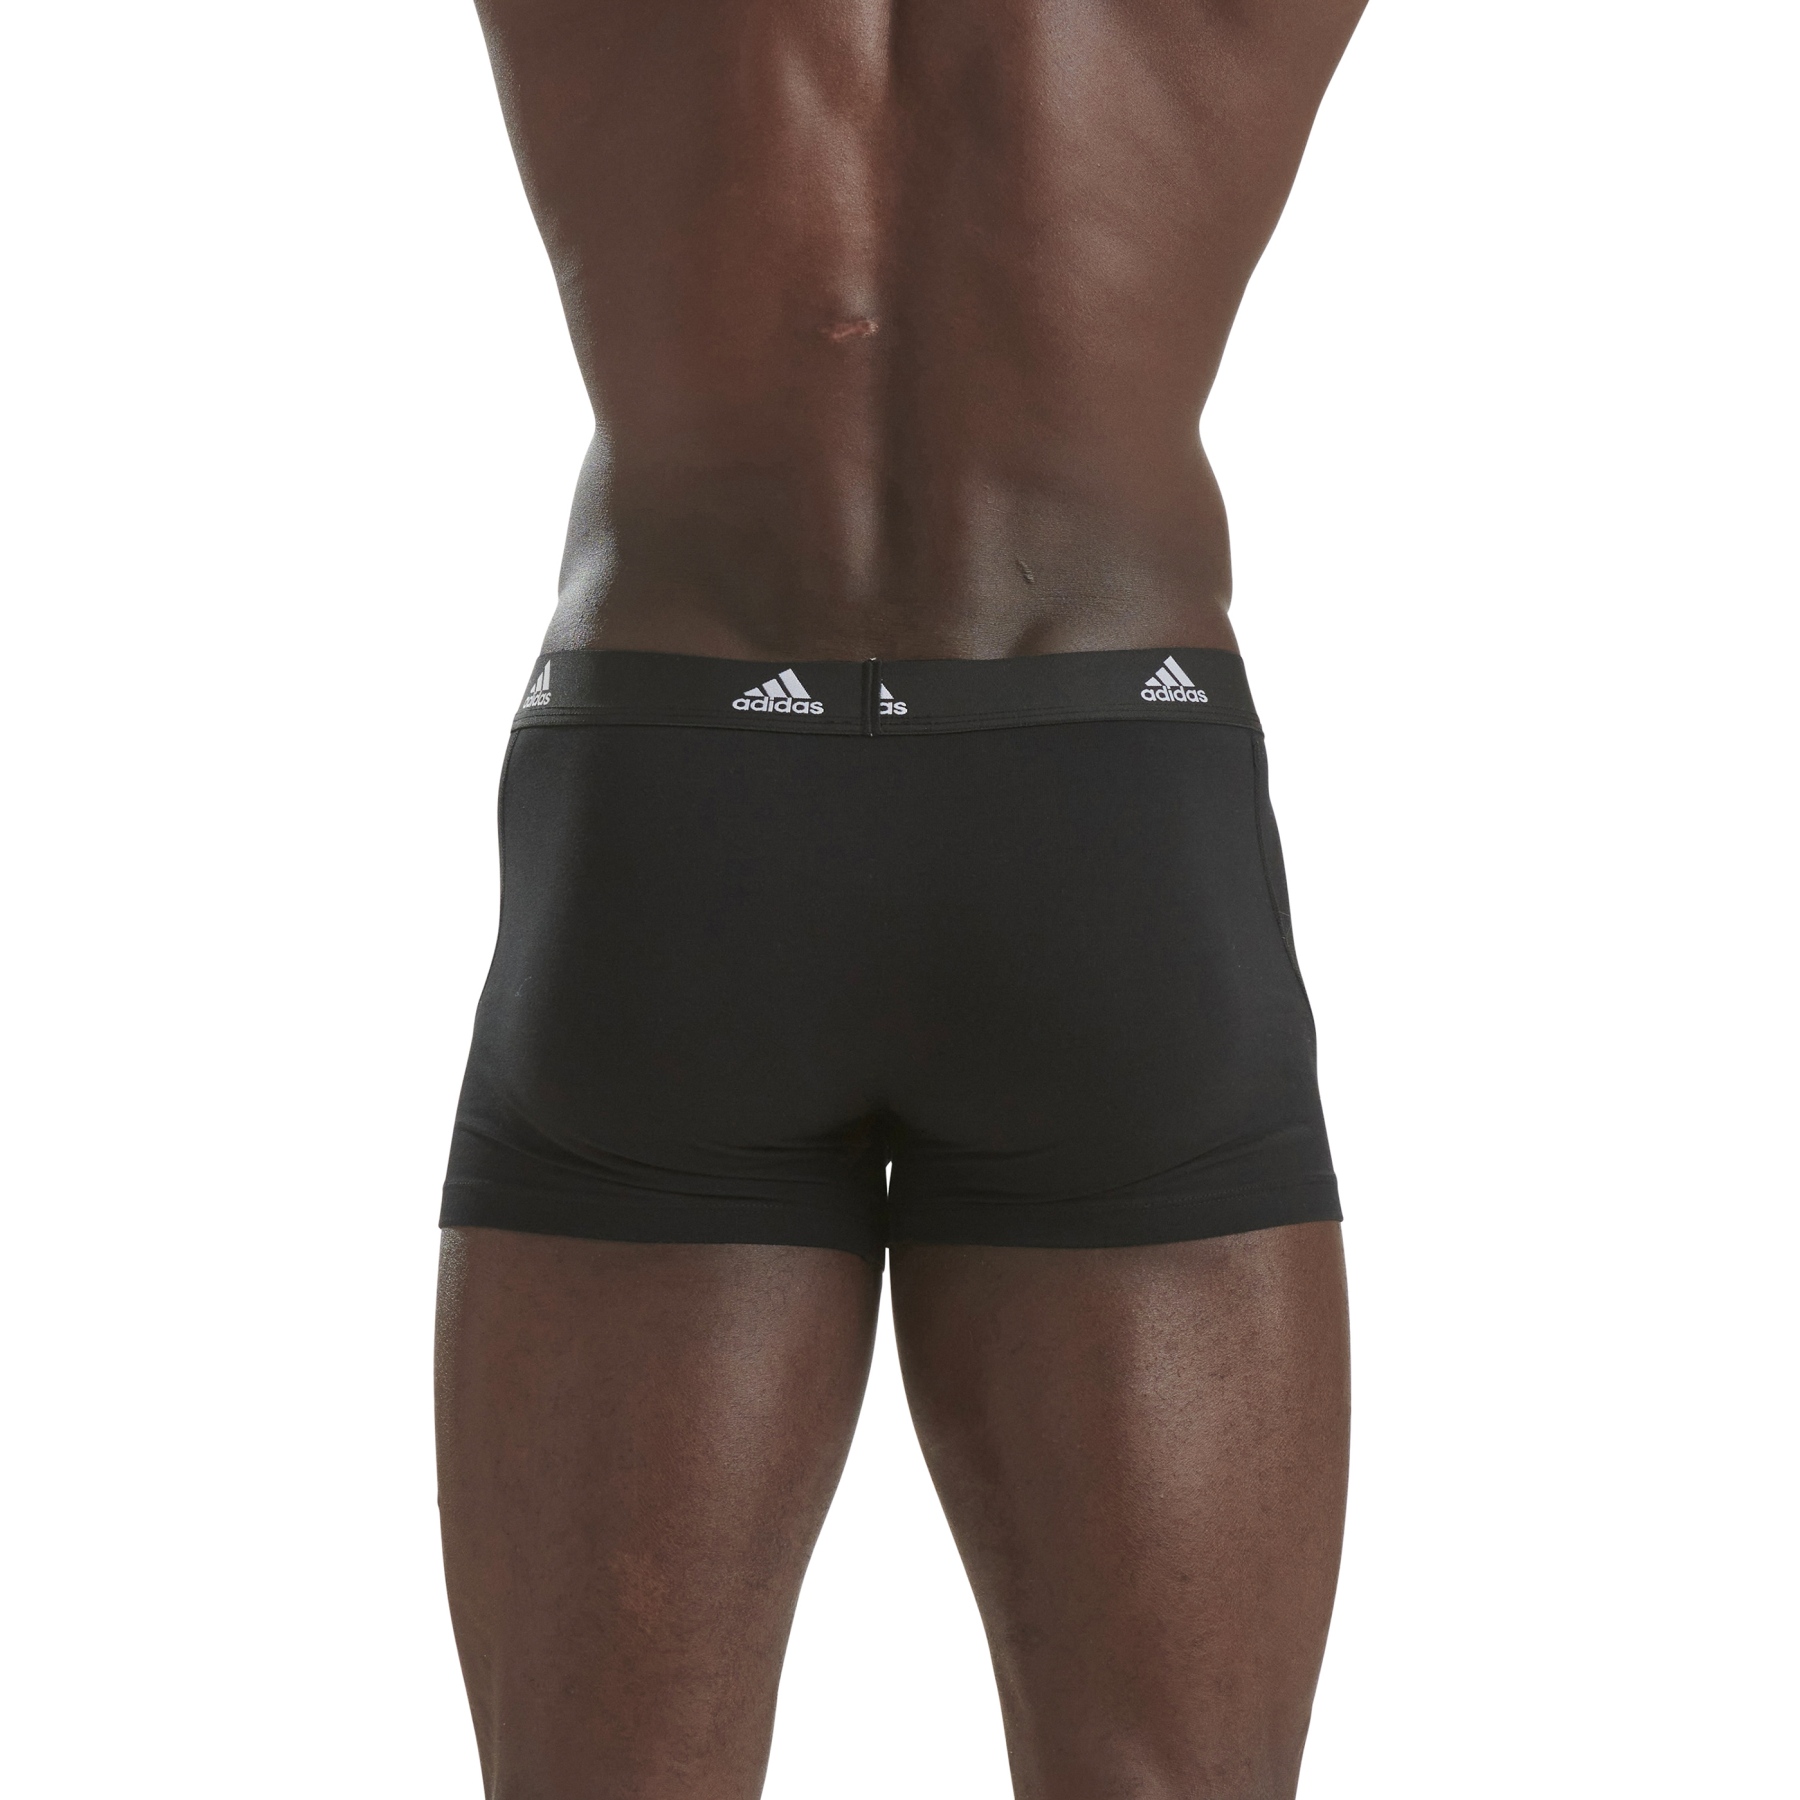 adidas Sports Underwear Active Flex Cotton Trunk Men - 3 Pack